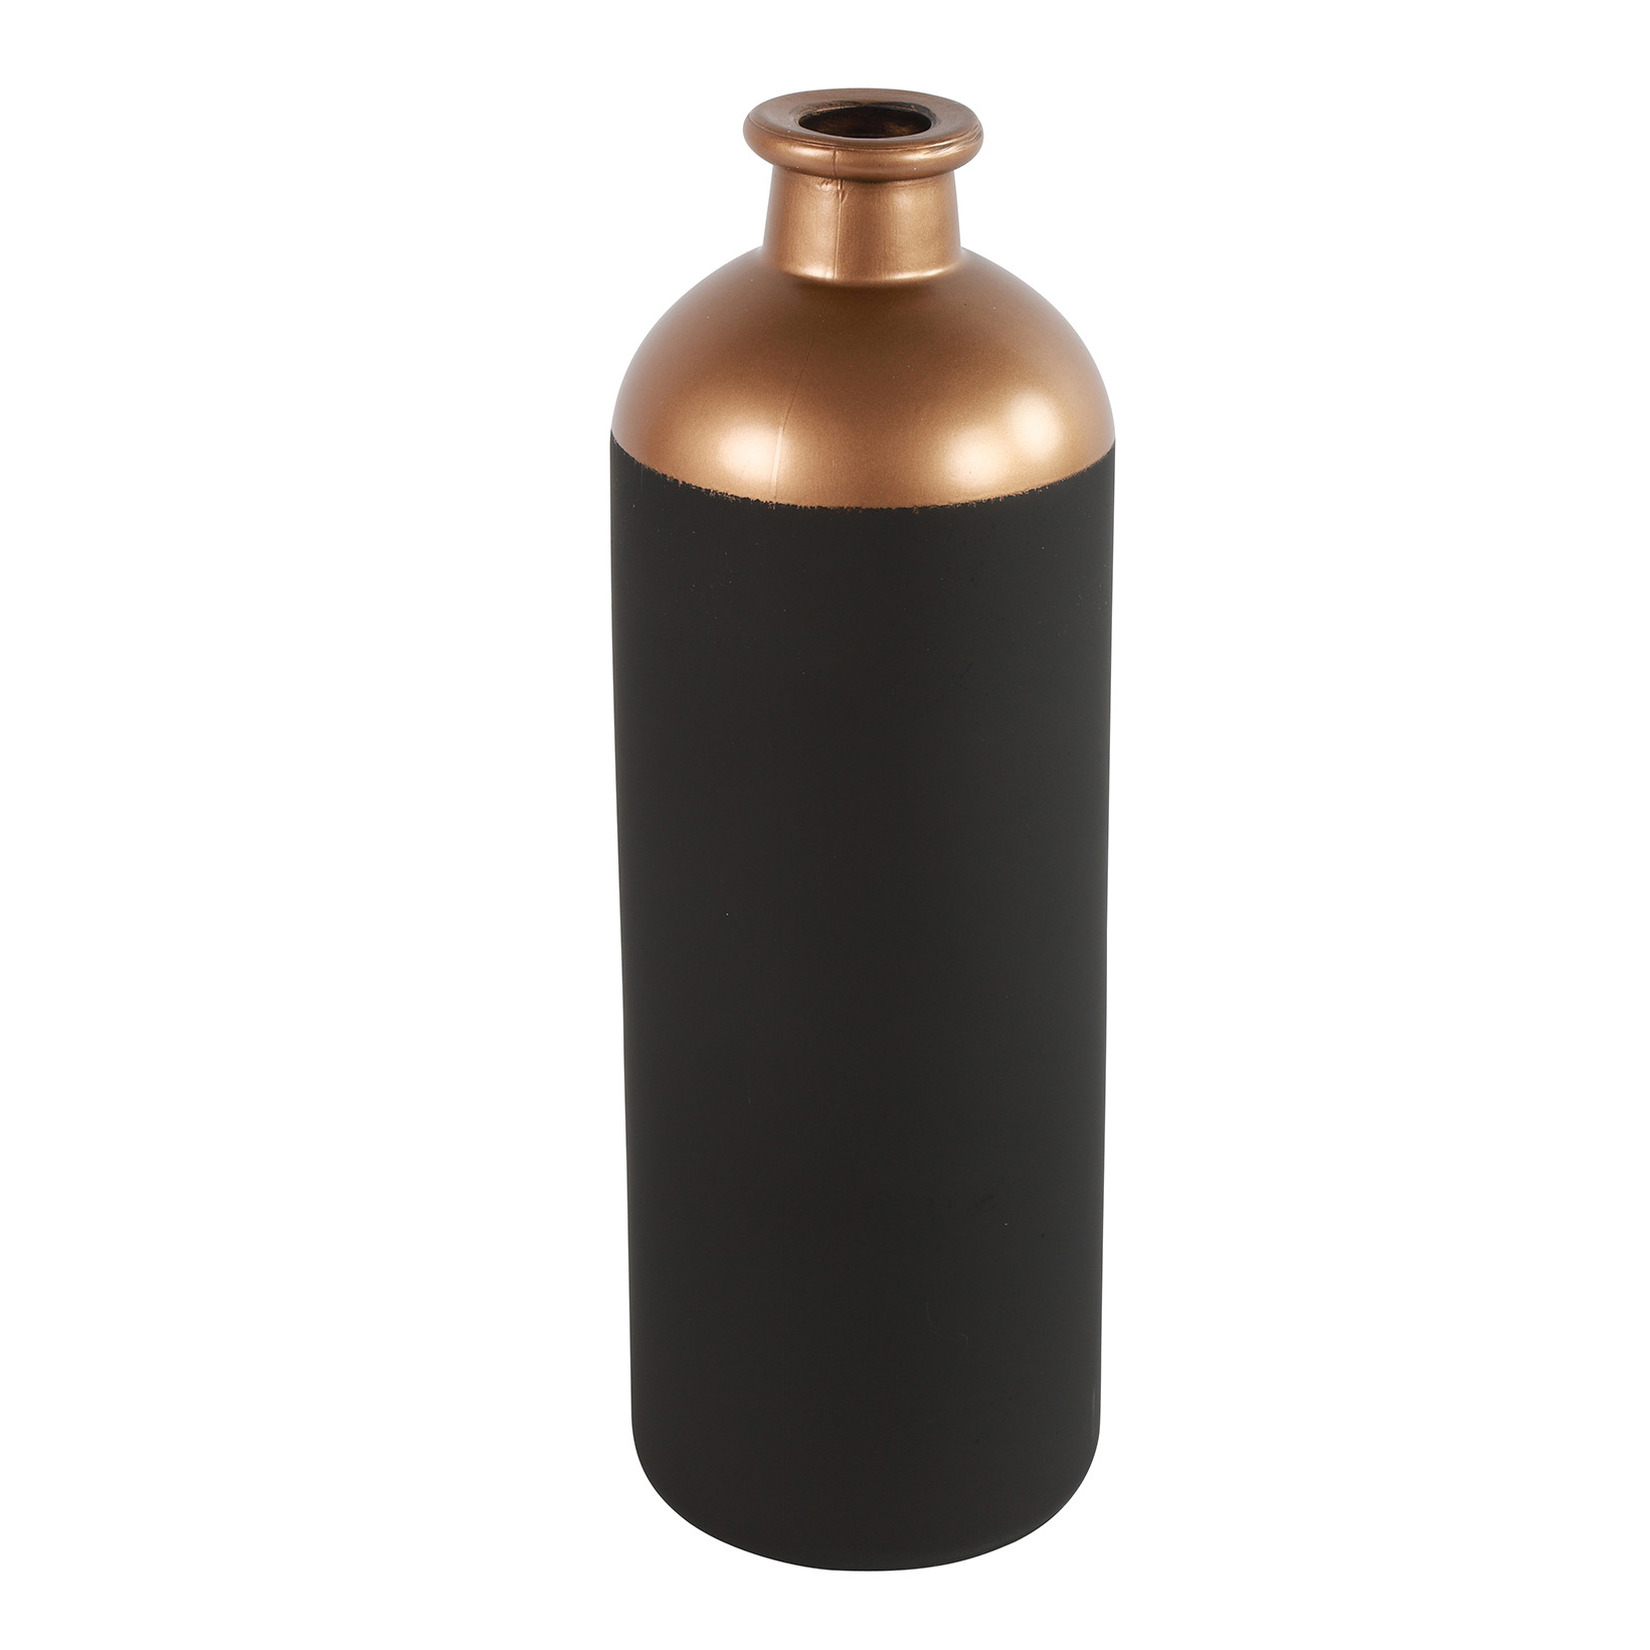 Countryfield Bloemen of deco vaas zwart-koper glas luxe fles vorm D11 x H33 cm